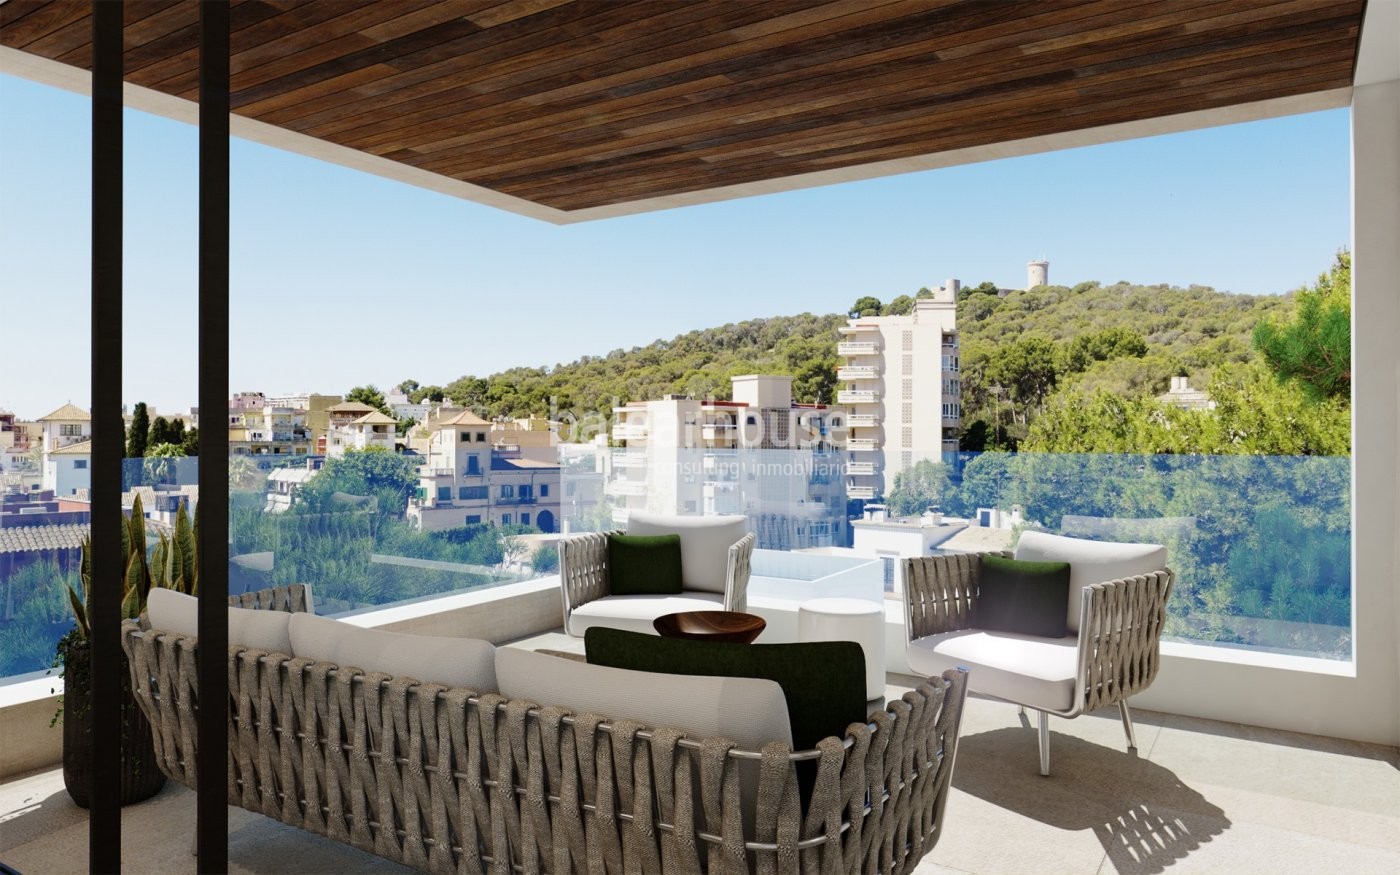 Nuevo proyecto de contemporáneas viviendas en Palma con magnífica área de piscina y jardín